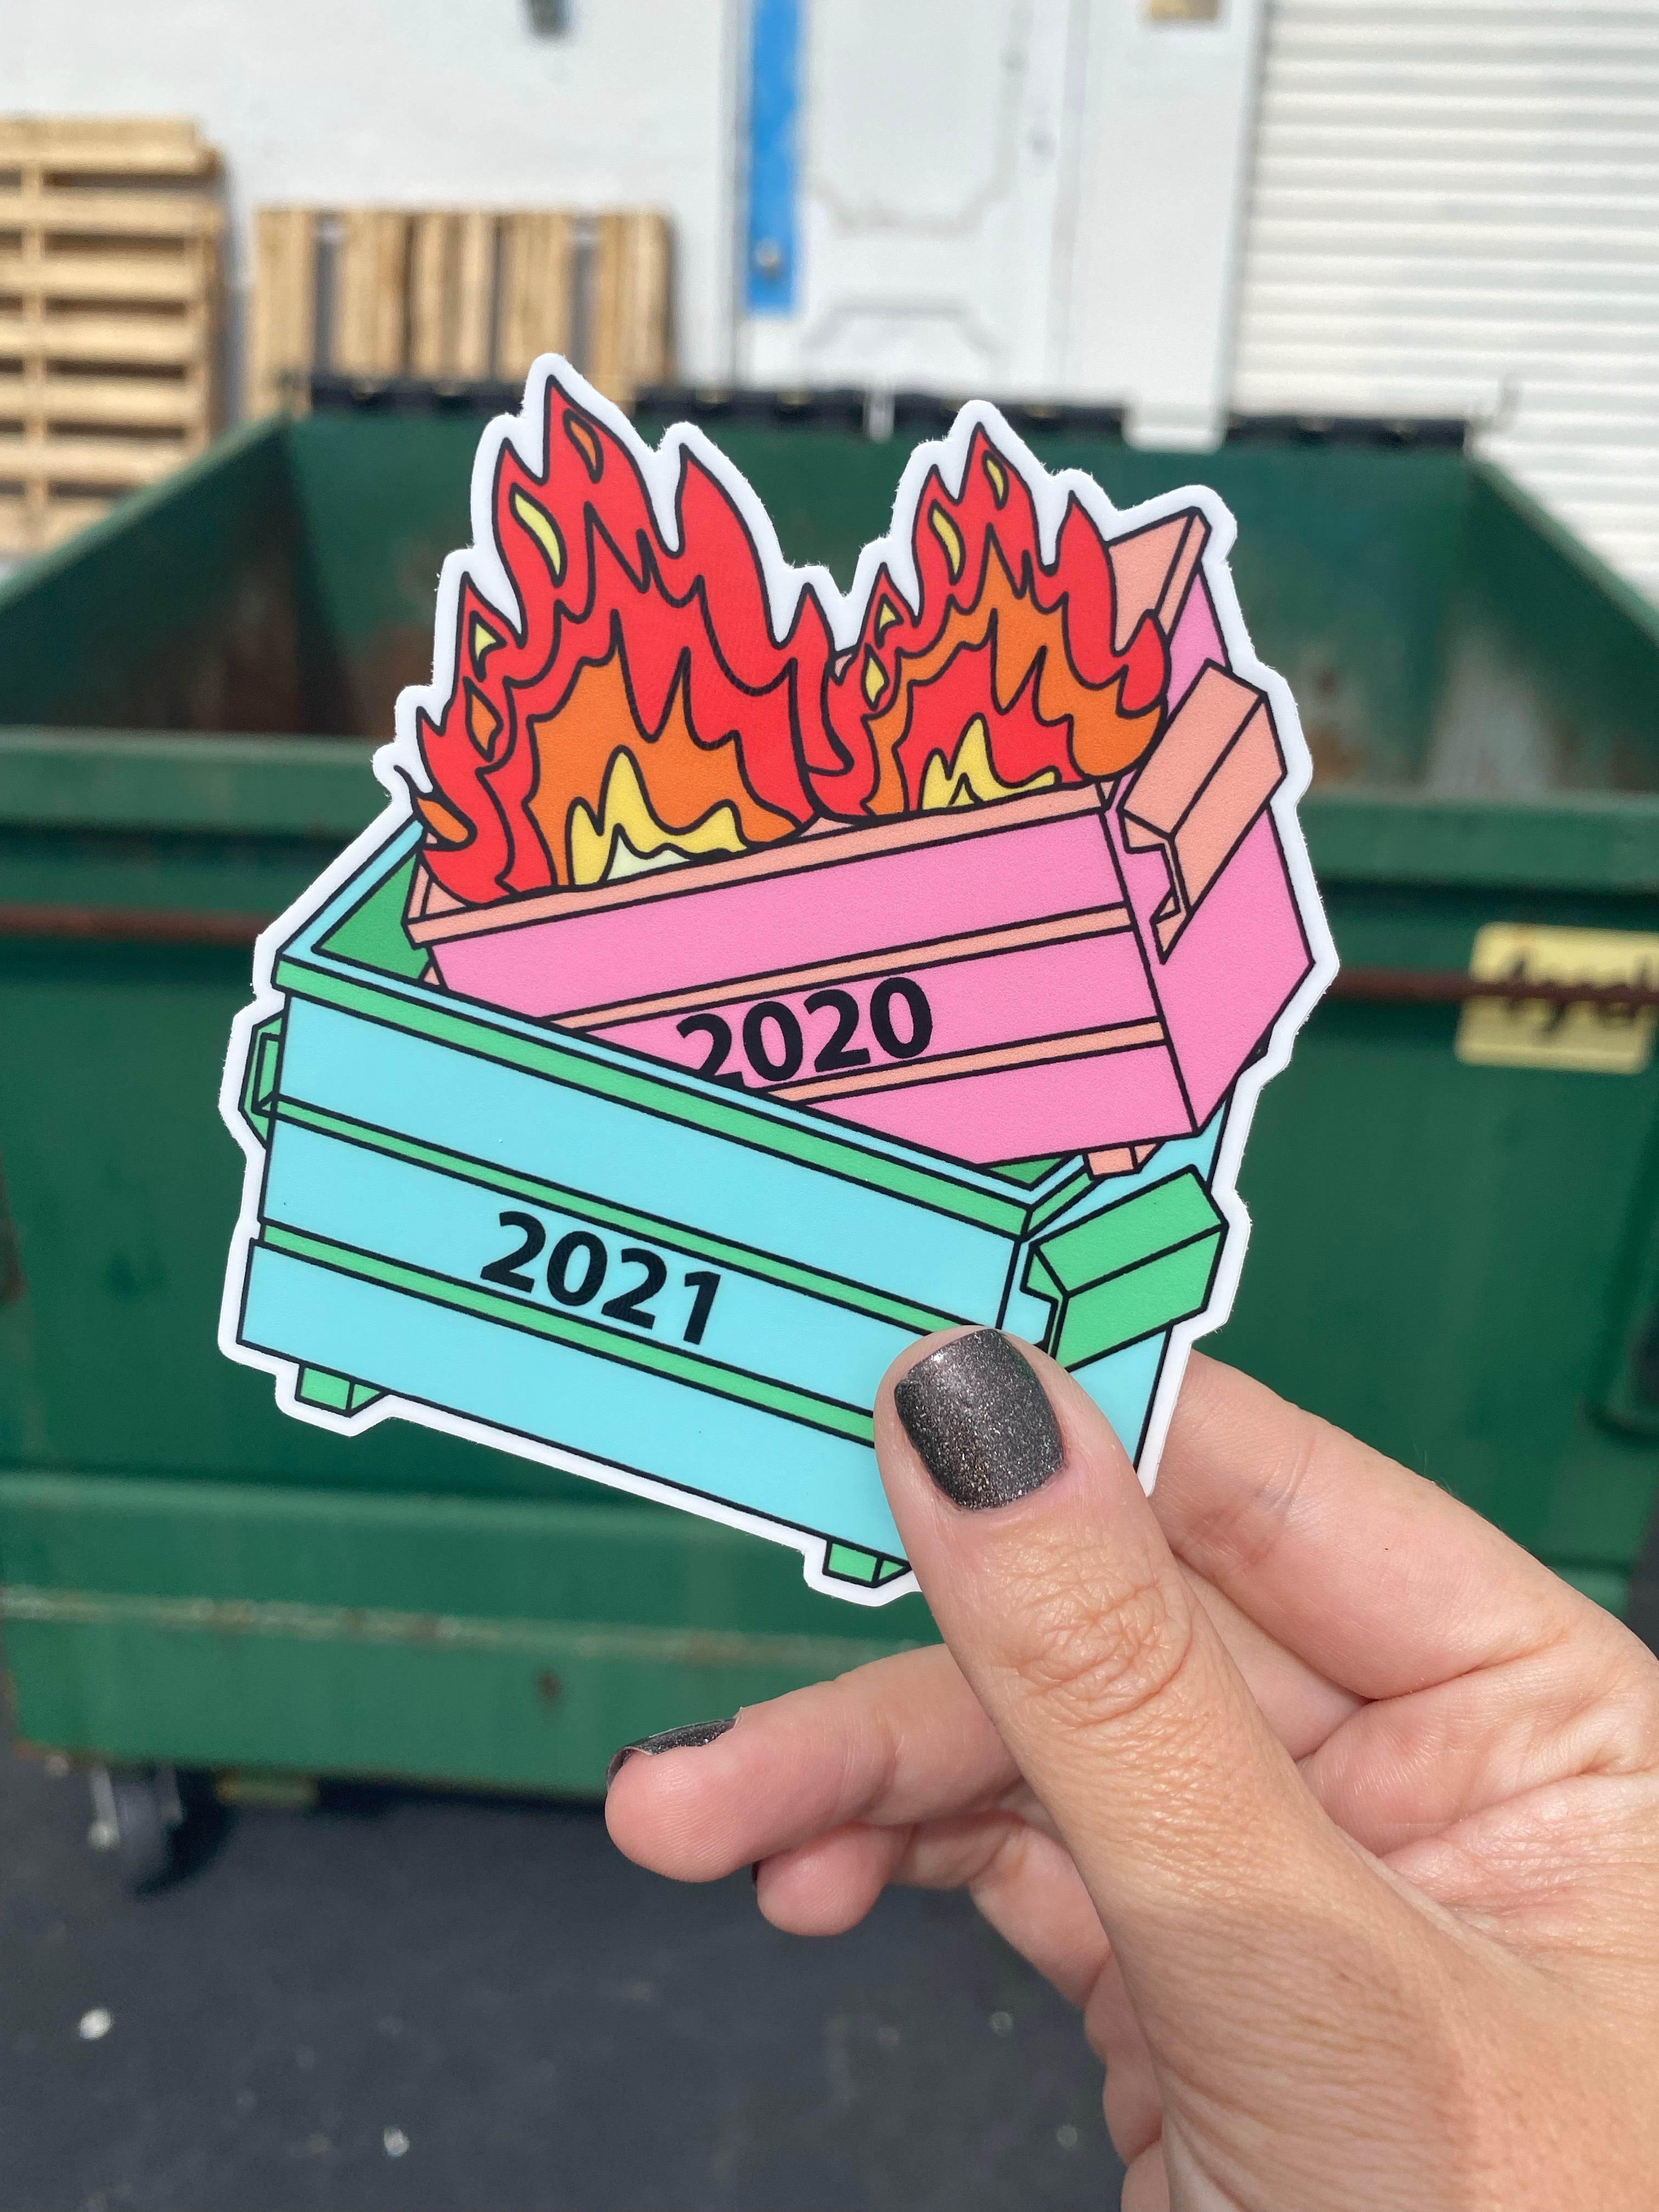 2021 Dumpster Fire Sticker Decal